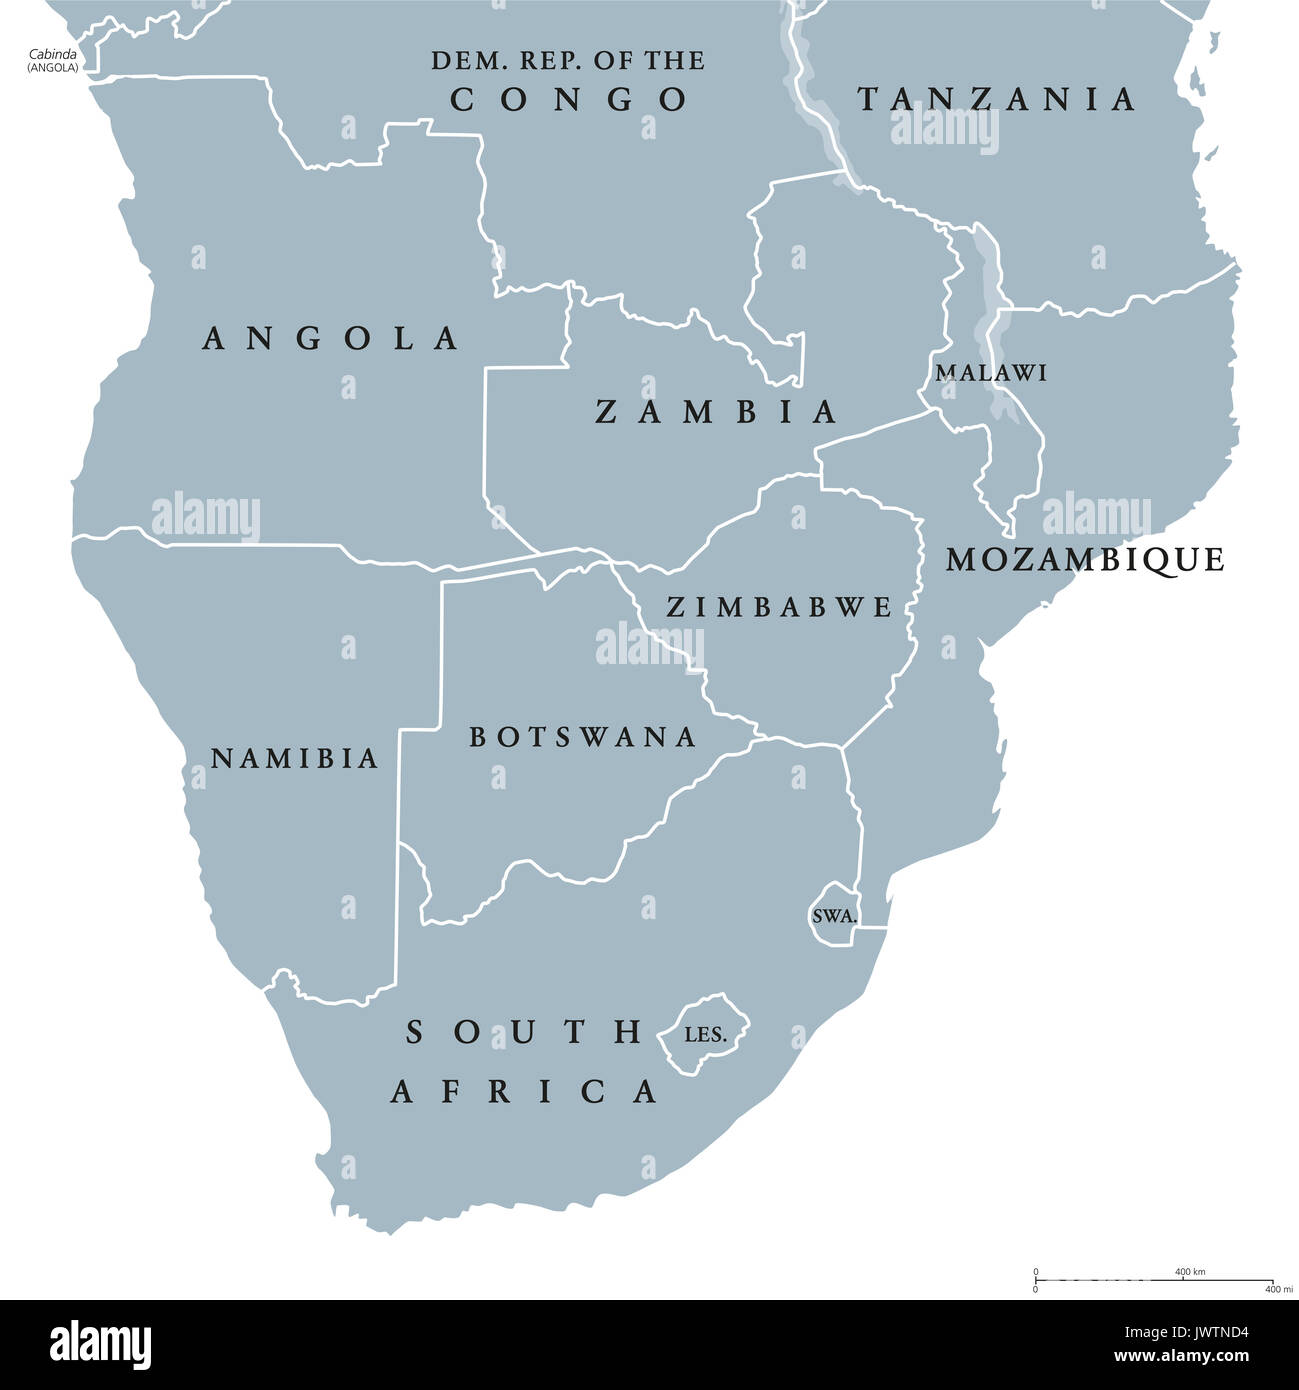 L'Afrique du Sud politique tracer des frontières des pays et l'anglais à l'étiquetage. La région la plus méridionale du continent africain. L'illustration. Banque D'Images